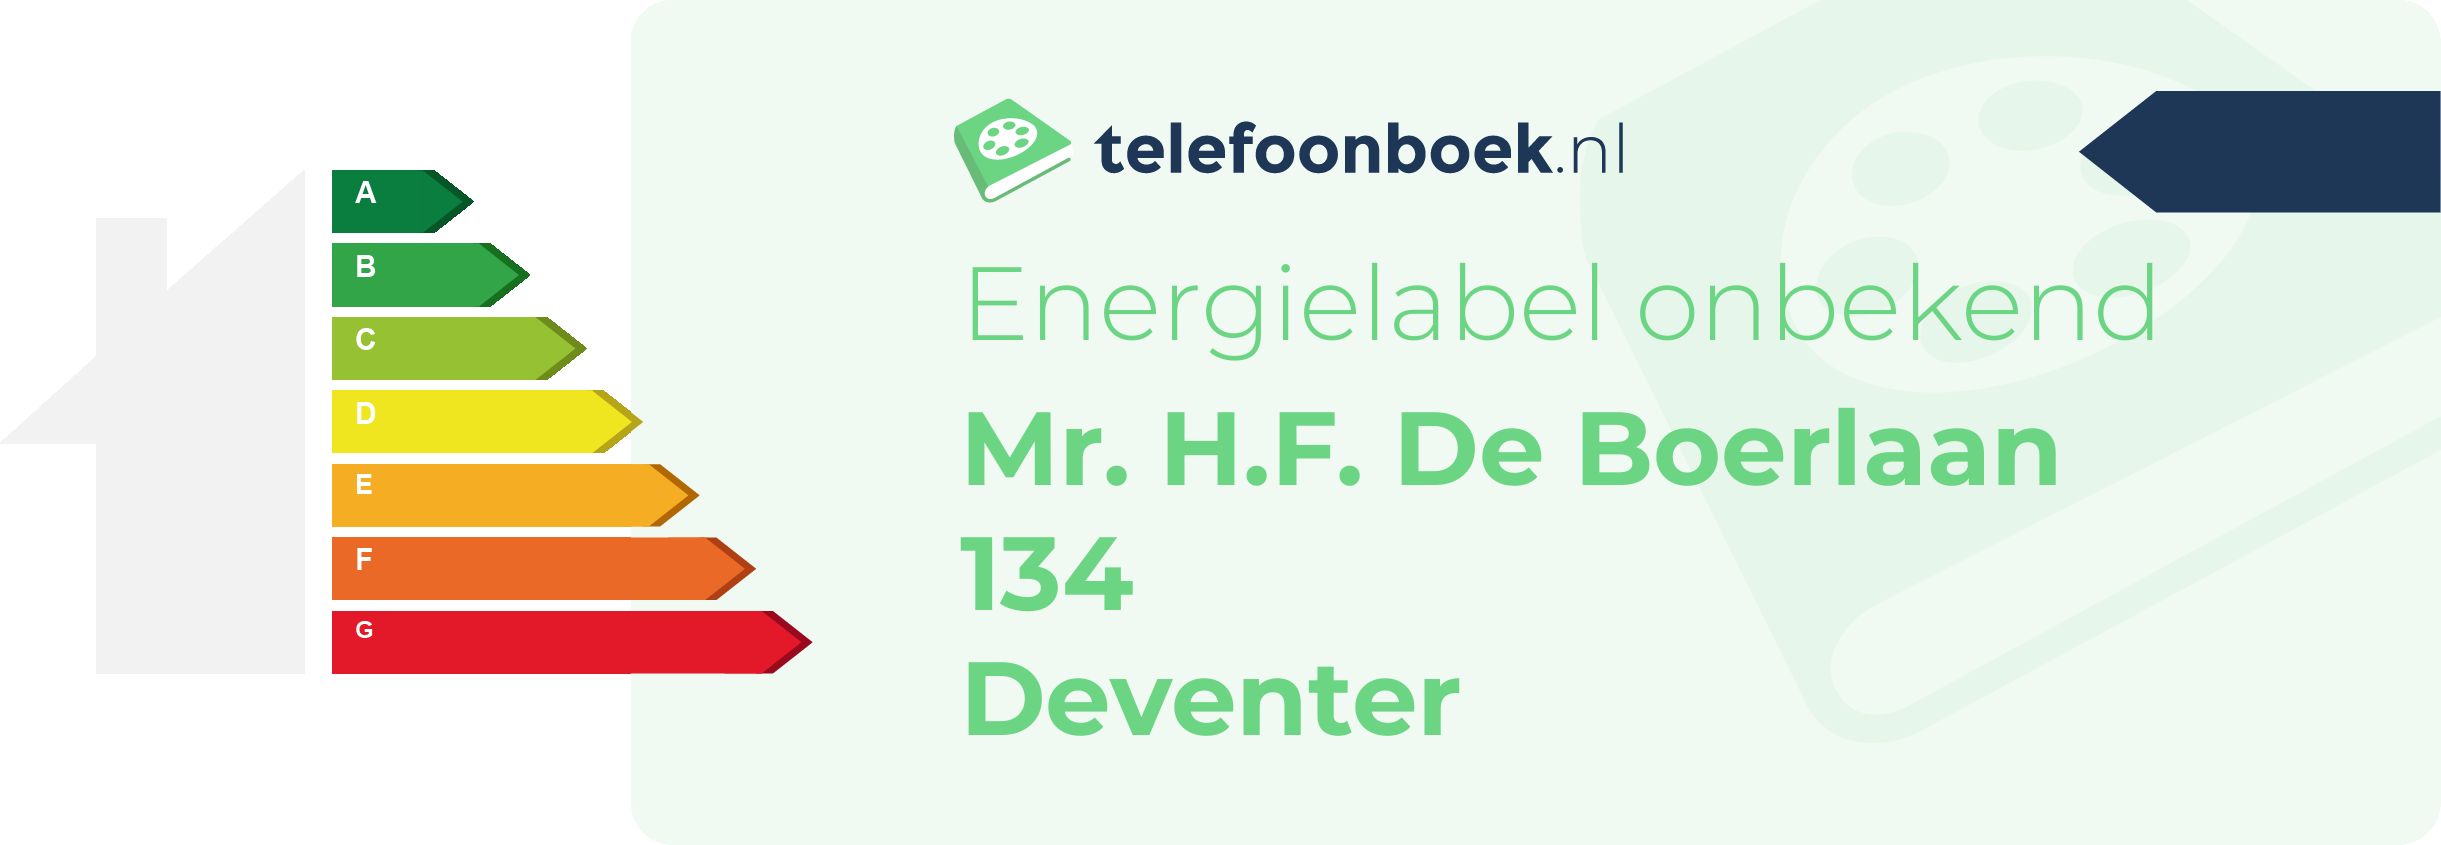 Energielabel Mr. H.F. De Boerlaan 134 Deventer